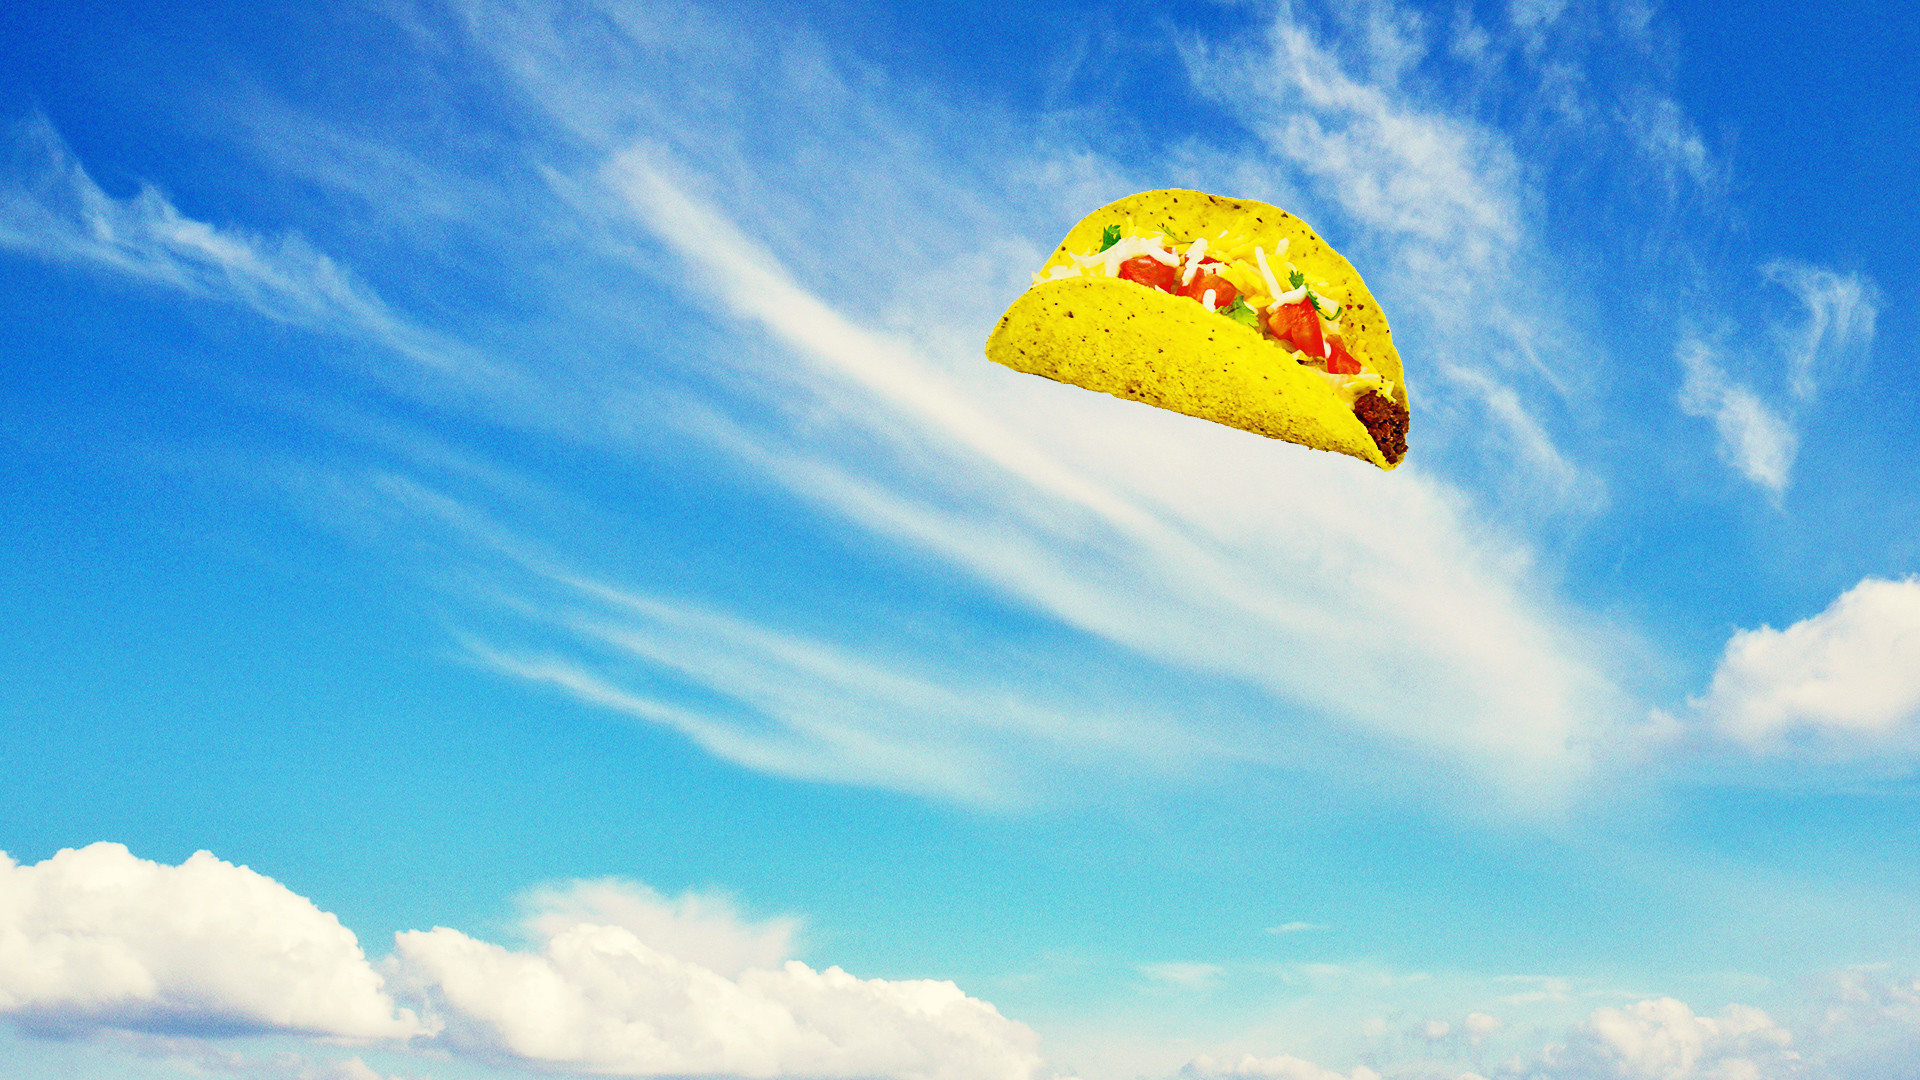 fond d'écran taco bell,ciel,nuage,jour,parachute,jaune